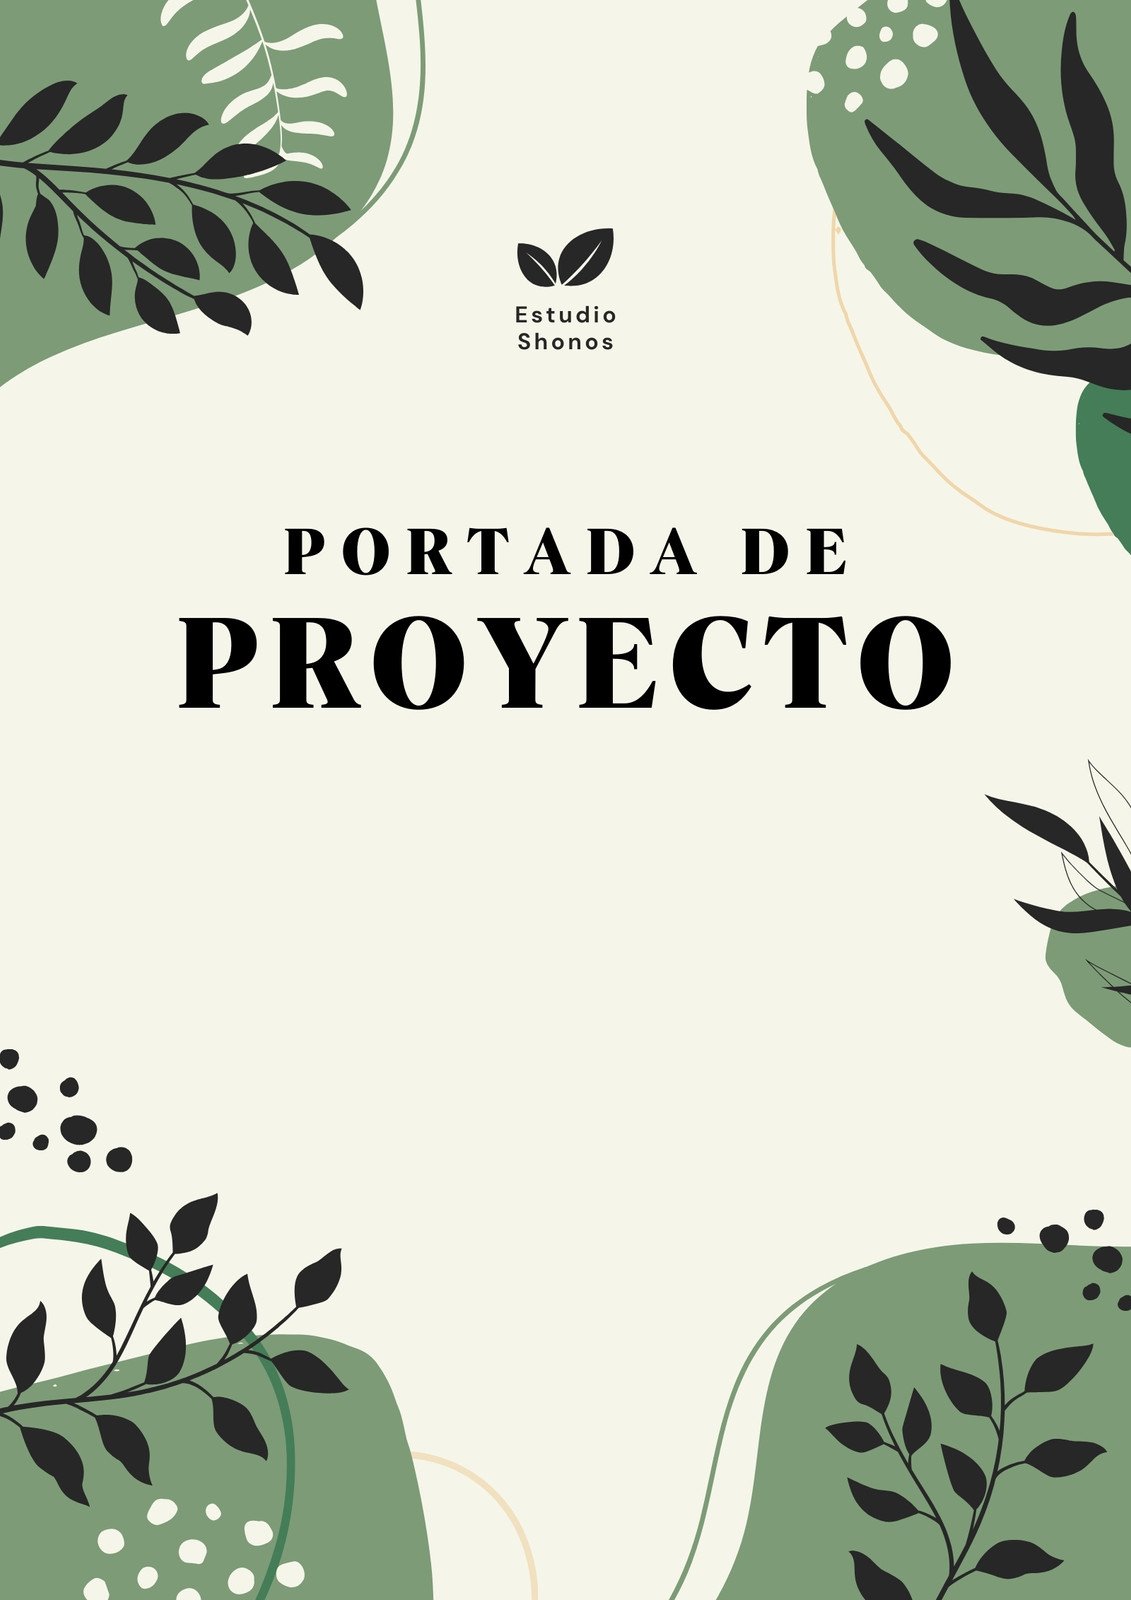 Documento A4 portada de proyecto orgánico minimalista verde